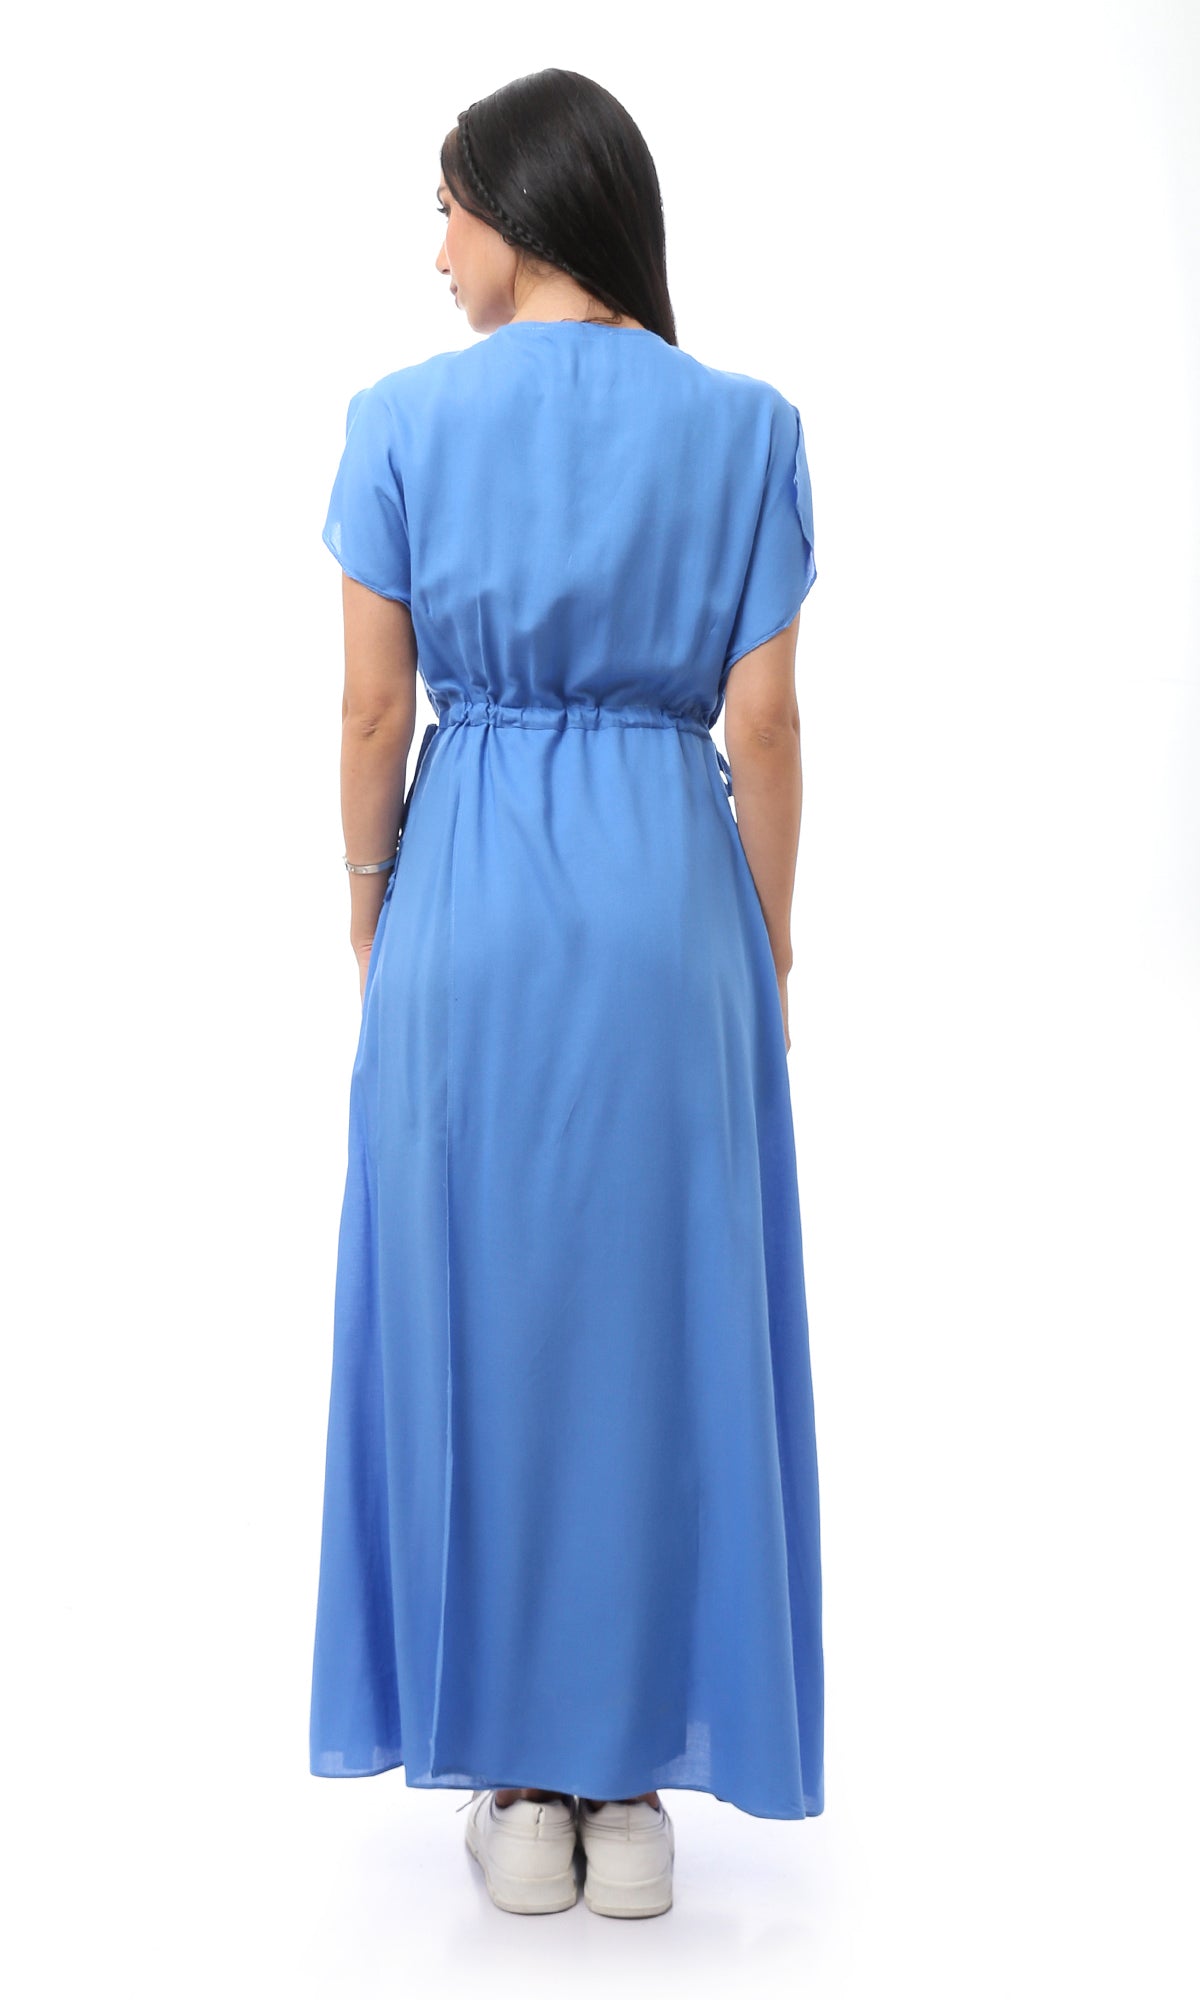 O165288 Elastic Waist Blue Comfy & Fashionable Dress